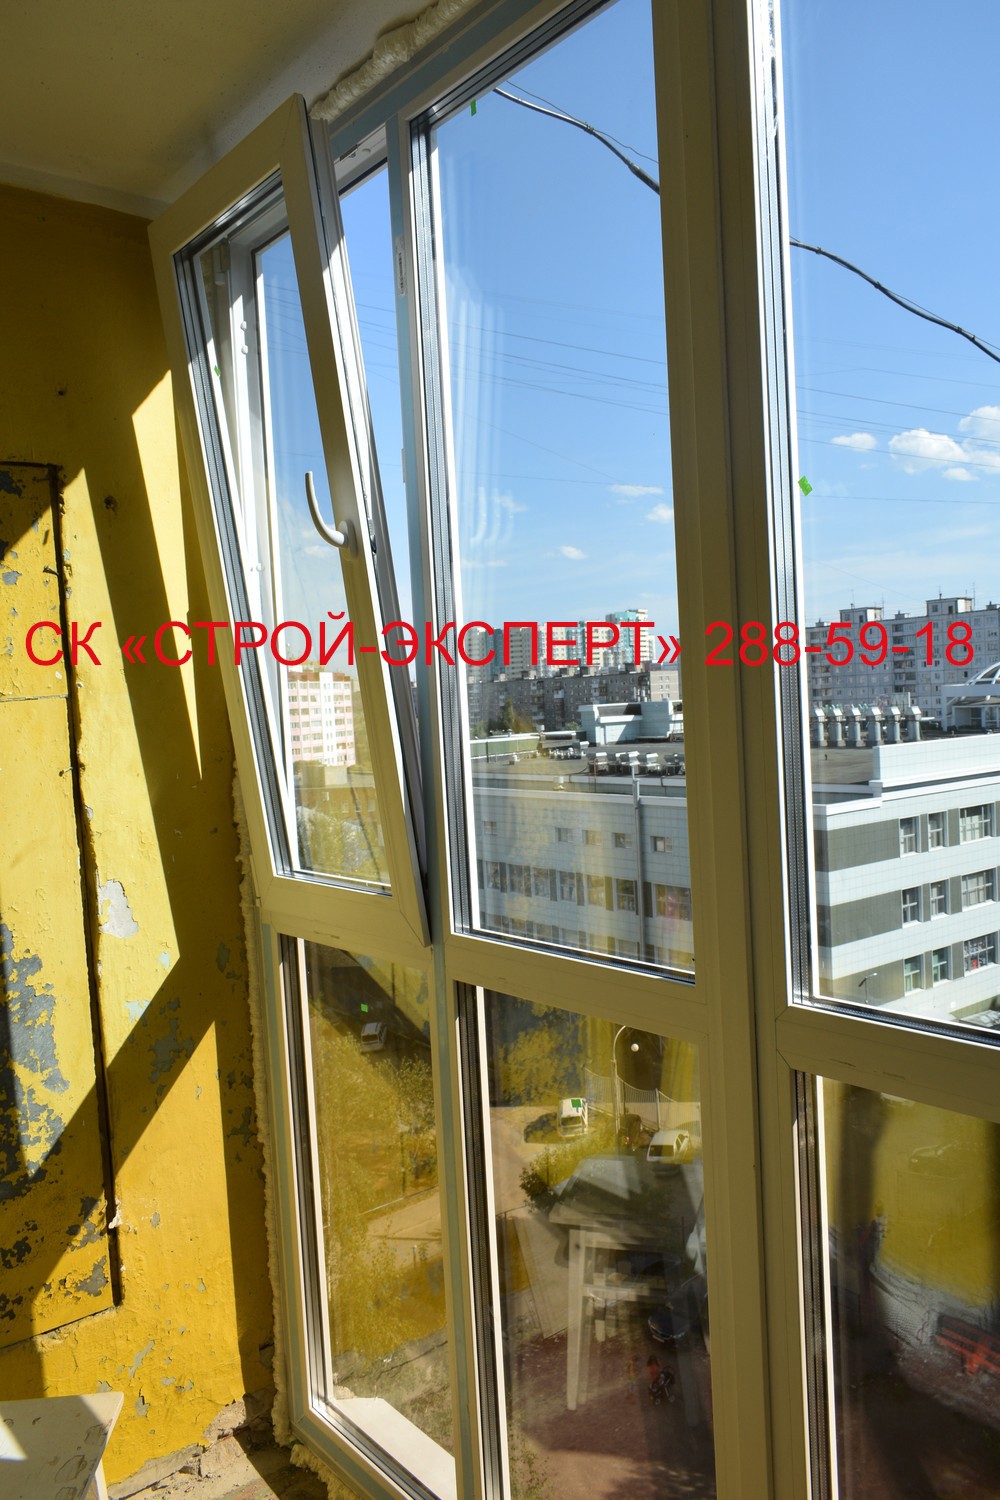 ФОТО-ГАЛЕРЕЯ - Балконы, лоджии фото - Застеклить балкон Пермь от 12500 рублей! - подарки всем!